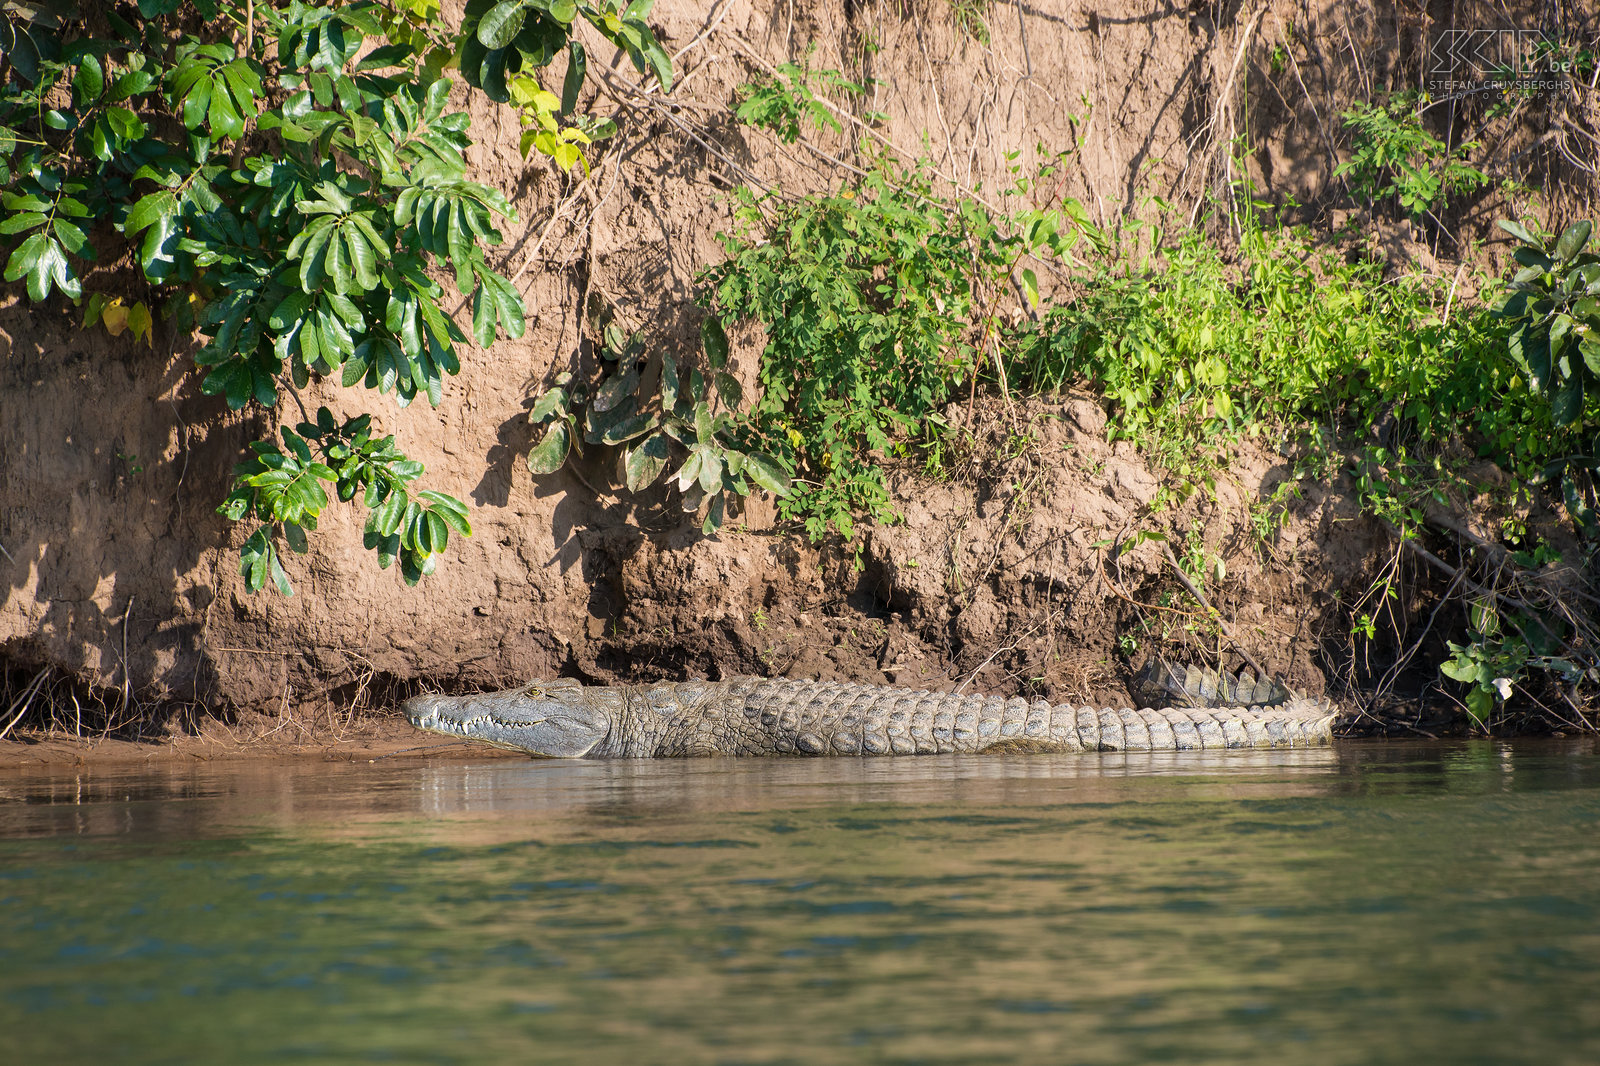 Lower Zambezi - Crocodile  Stefan Cruysberghs